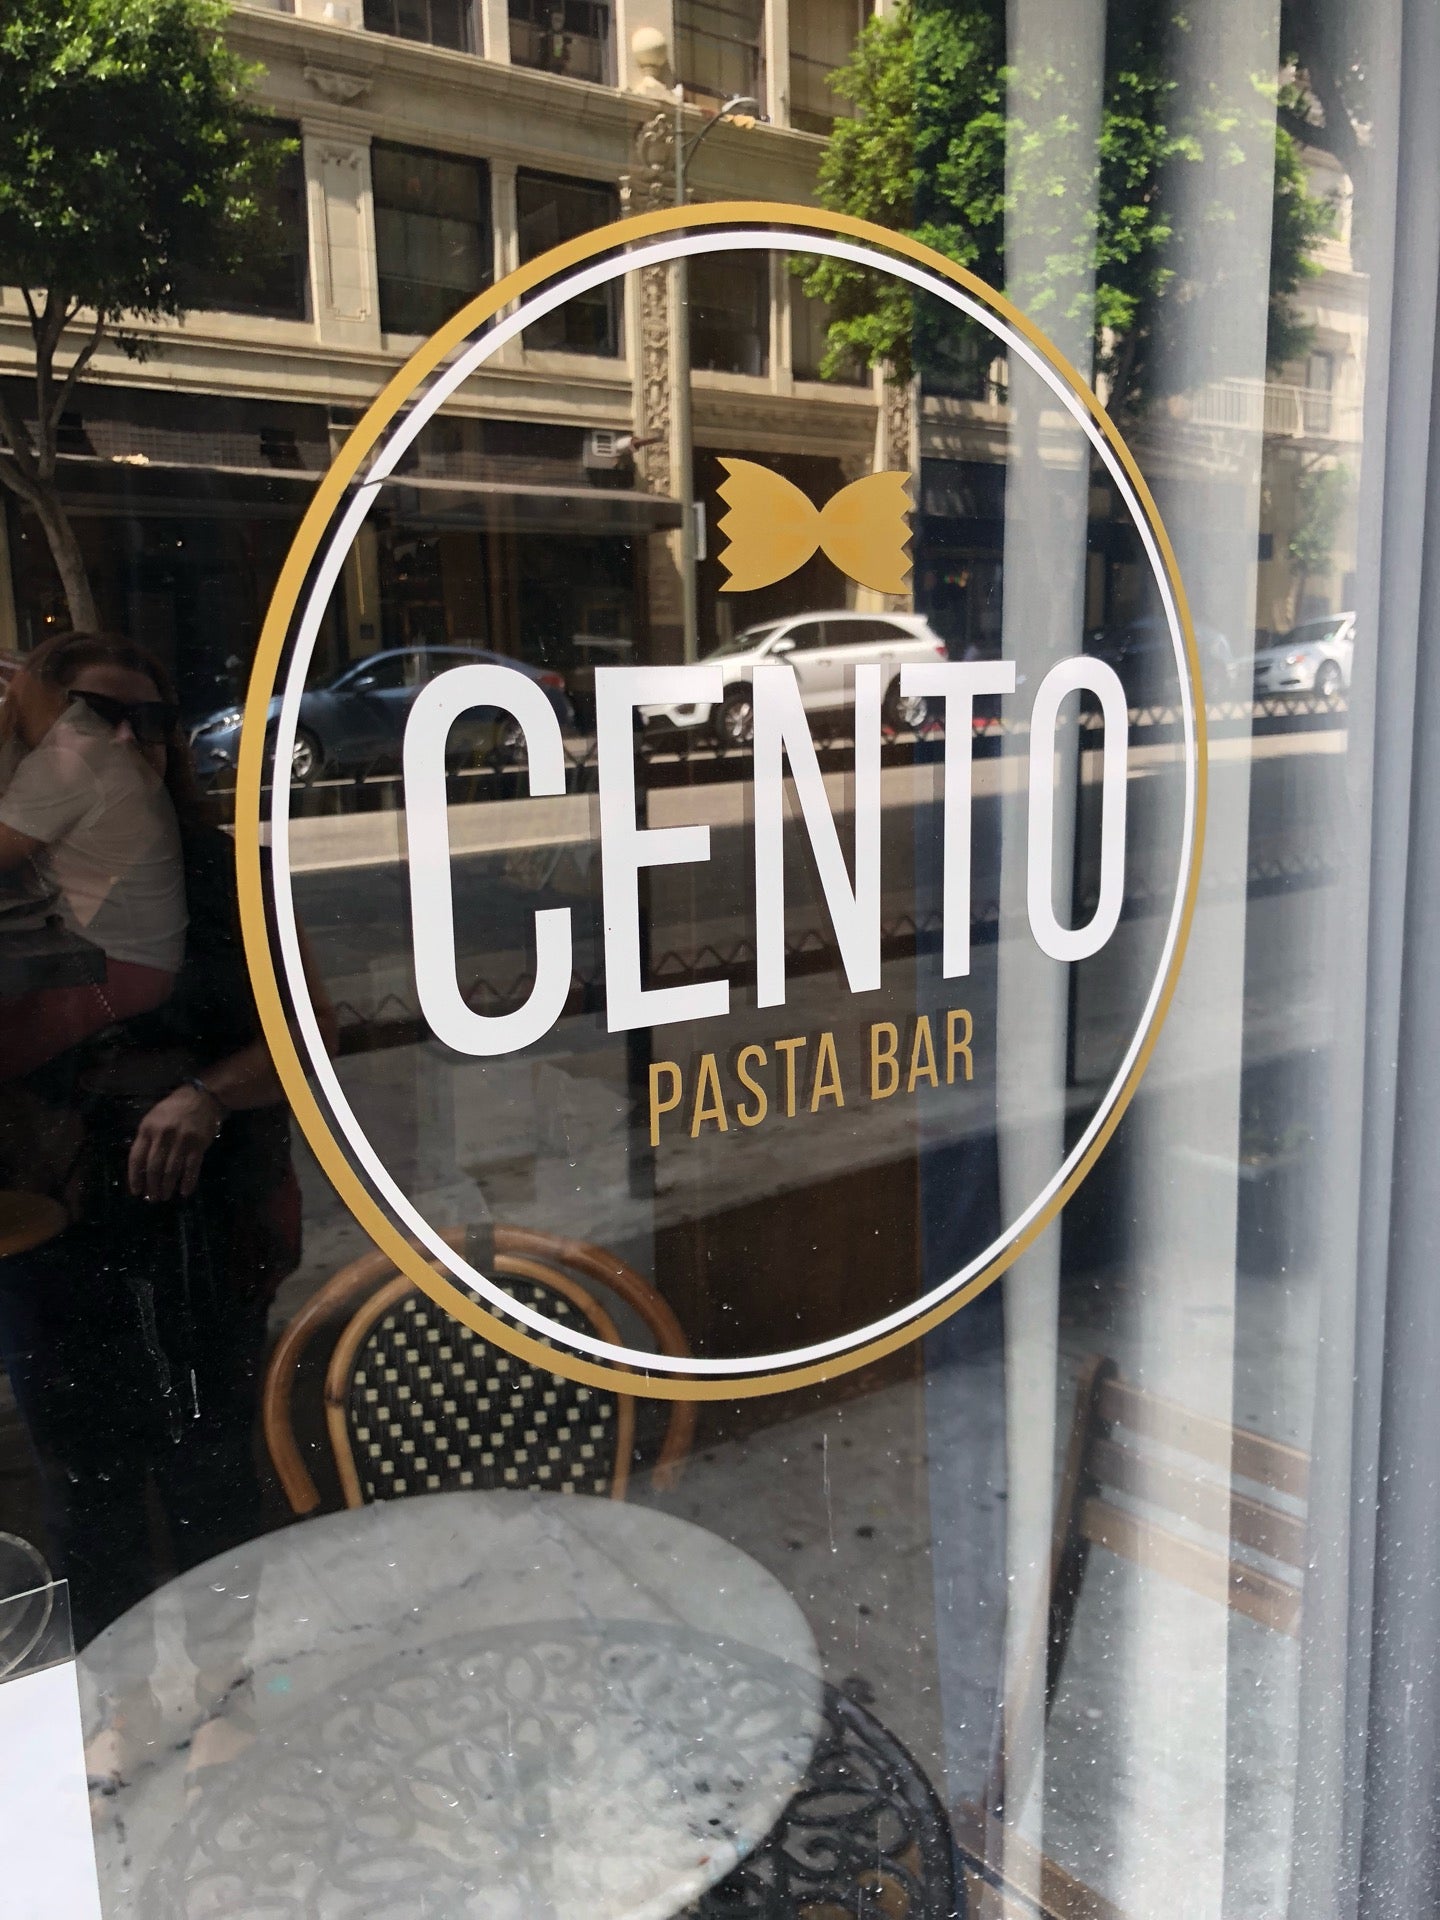 Cento Pasta Bar